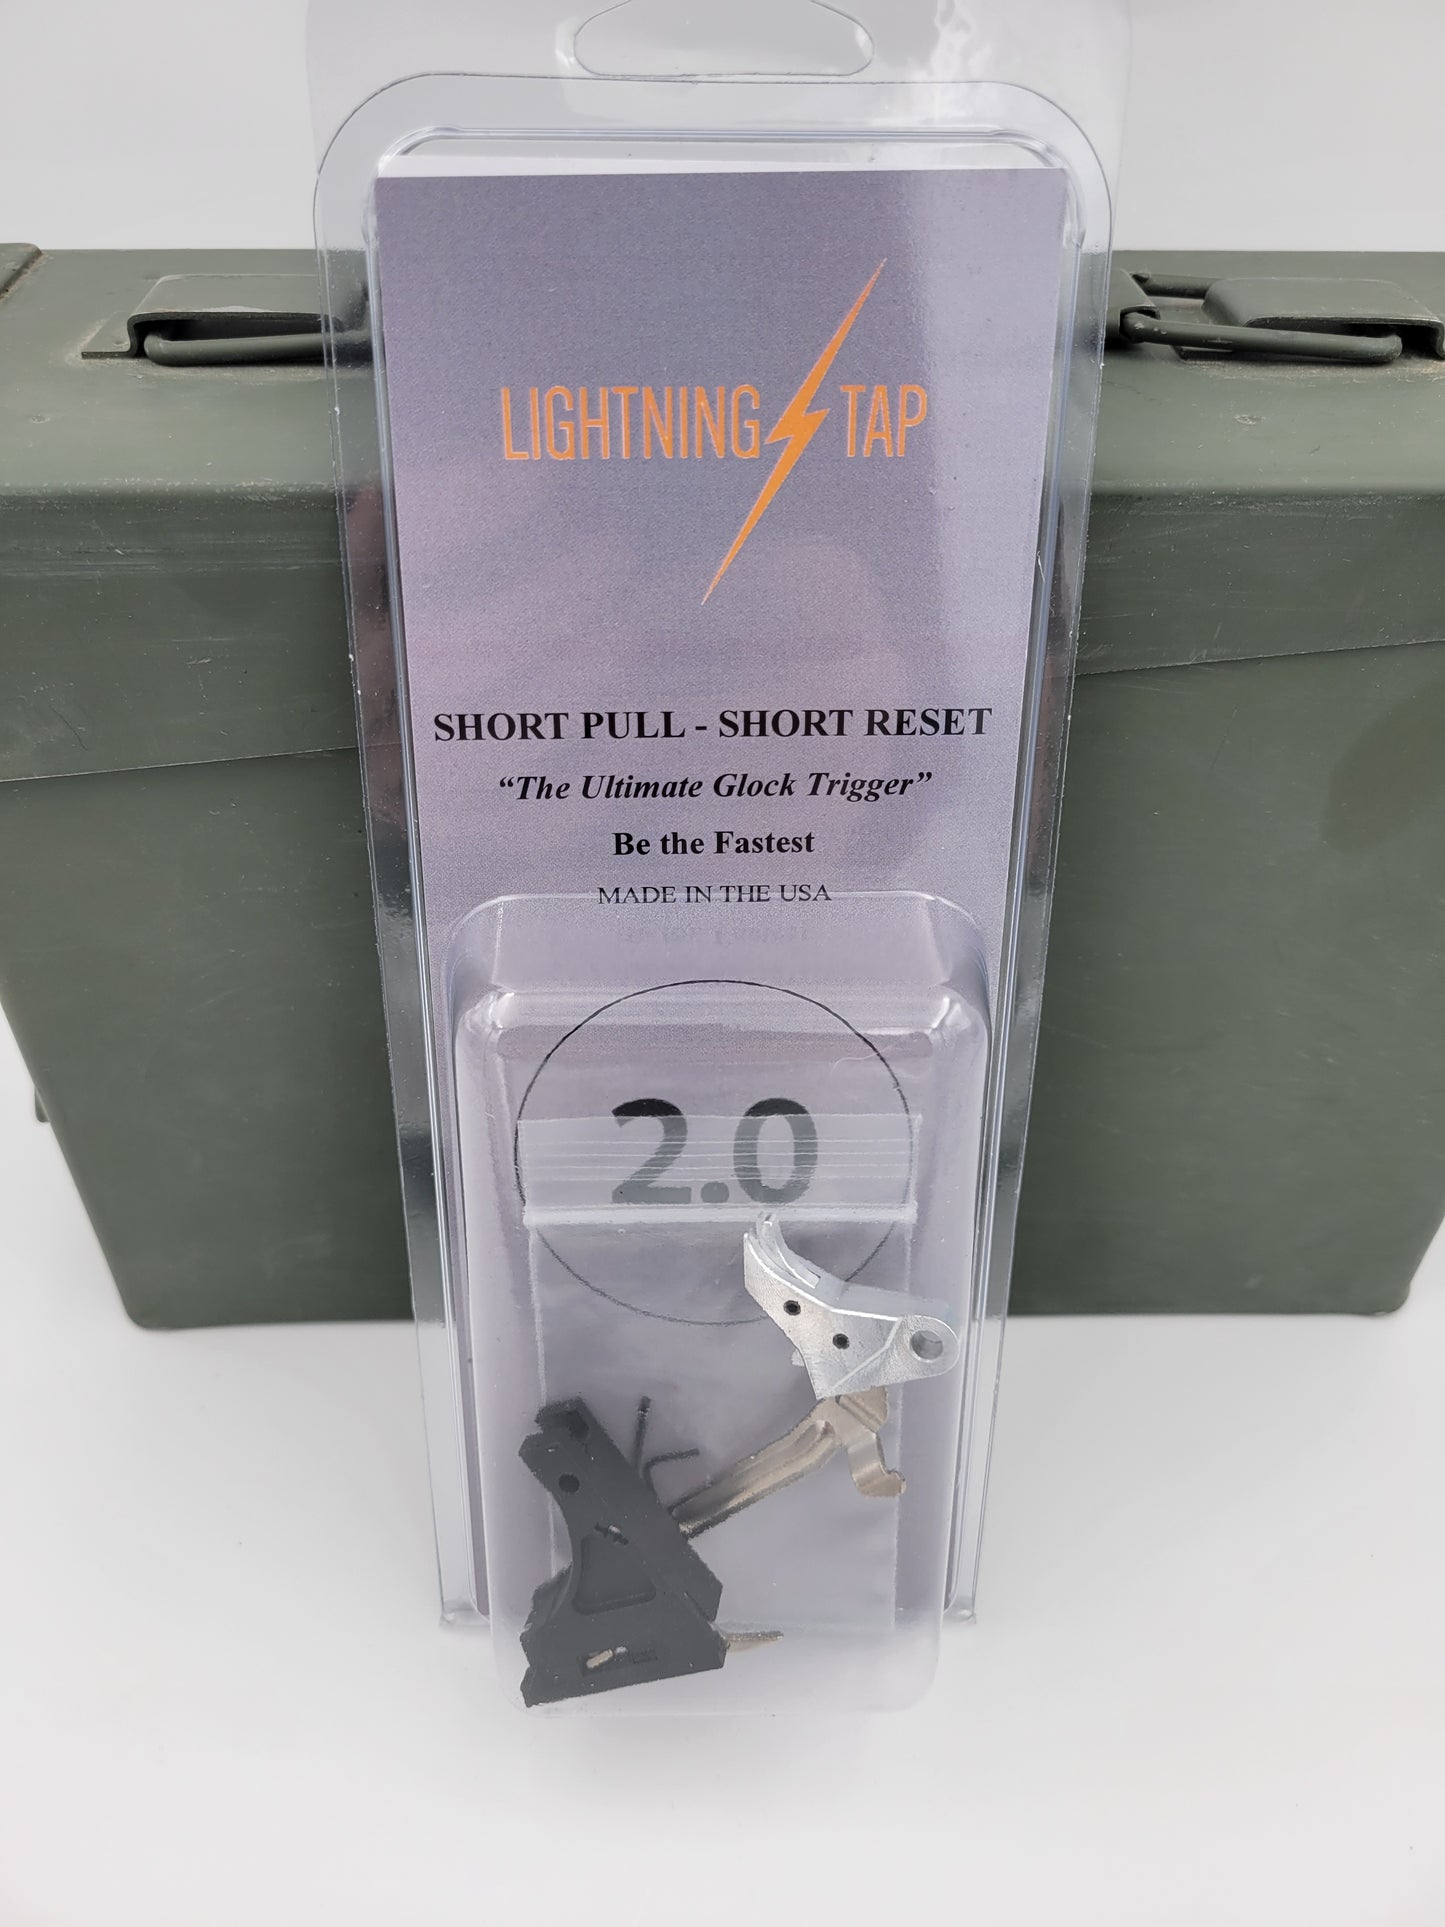 G17/19 Short Pull, Short Reset 2.0 'Lightning Tap' Trigger - Billet Trigger with Bar